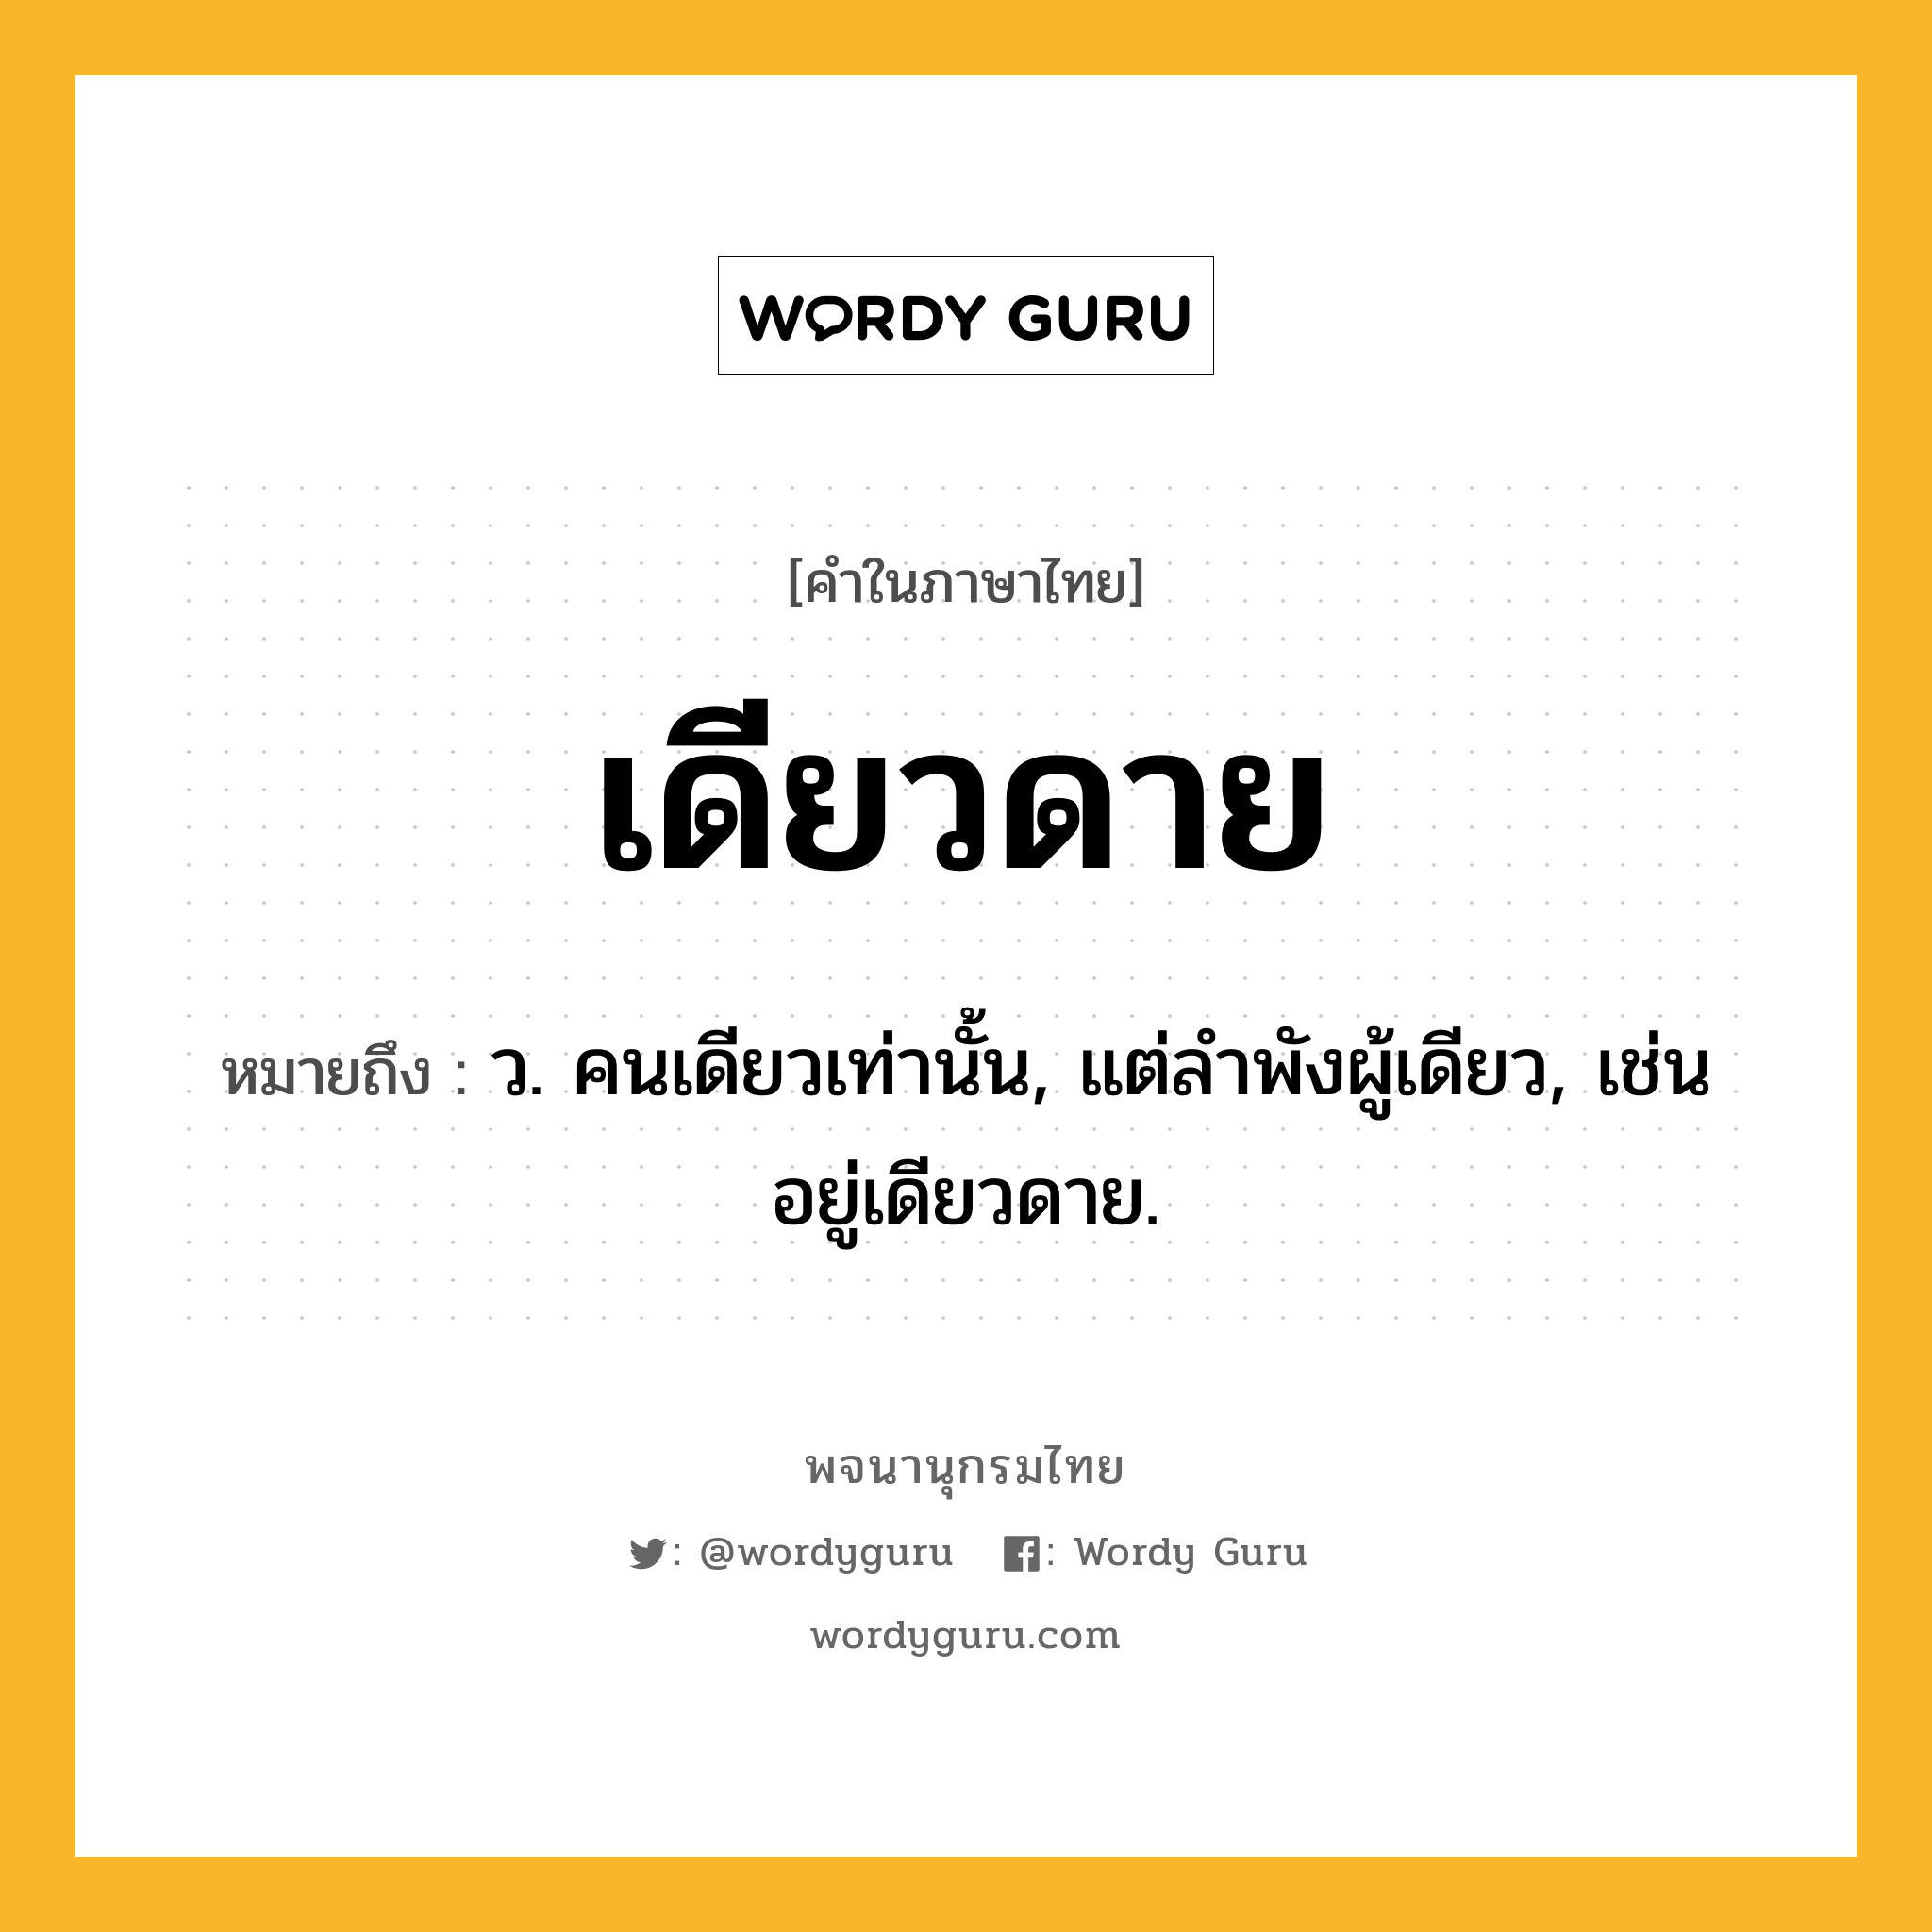 เดียวดาย หมายถึงอะไร?, คำในภาษาไทย เดียวดาย หมายถึง ว. คนเดียวเท่านั้น, แต่ลําพังผู้เดียว, เช่น อยู่เดียวดาย.